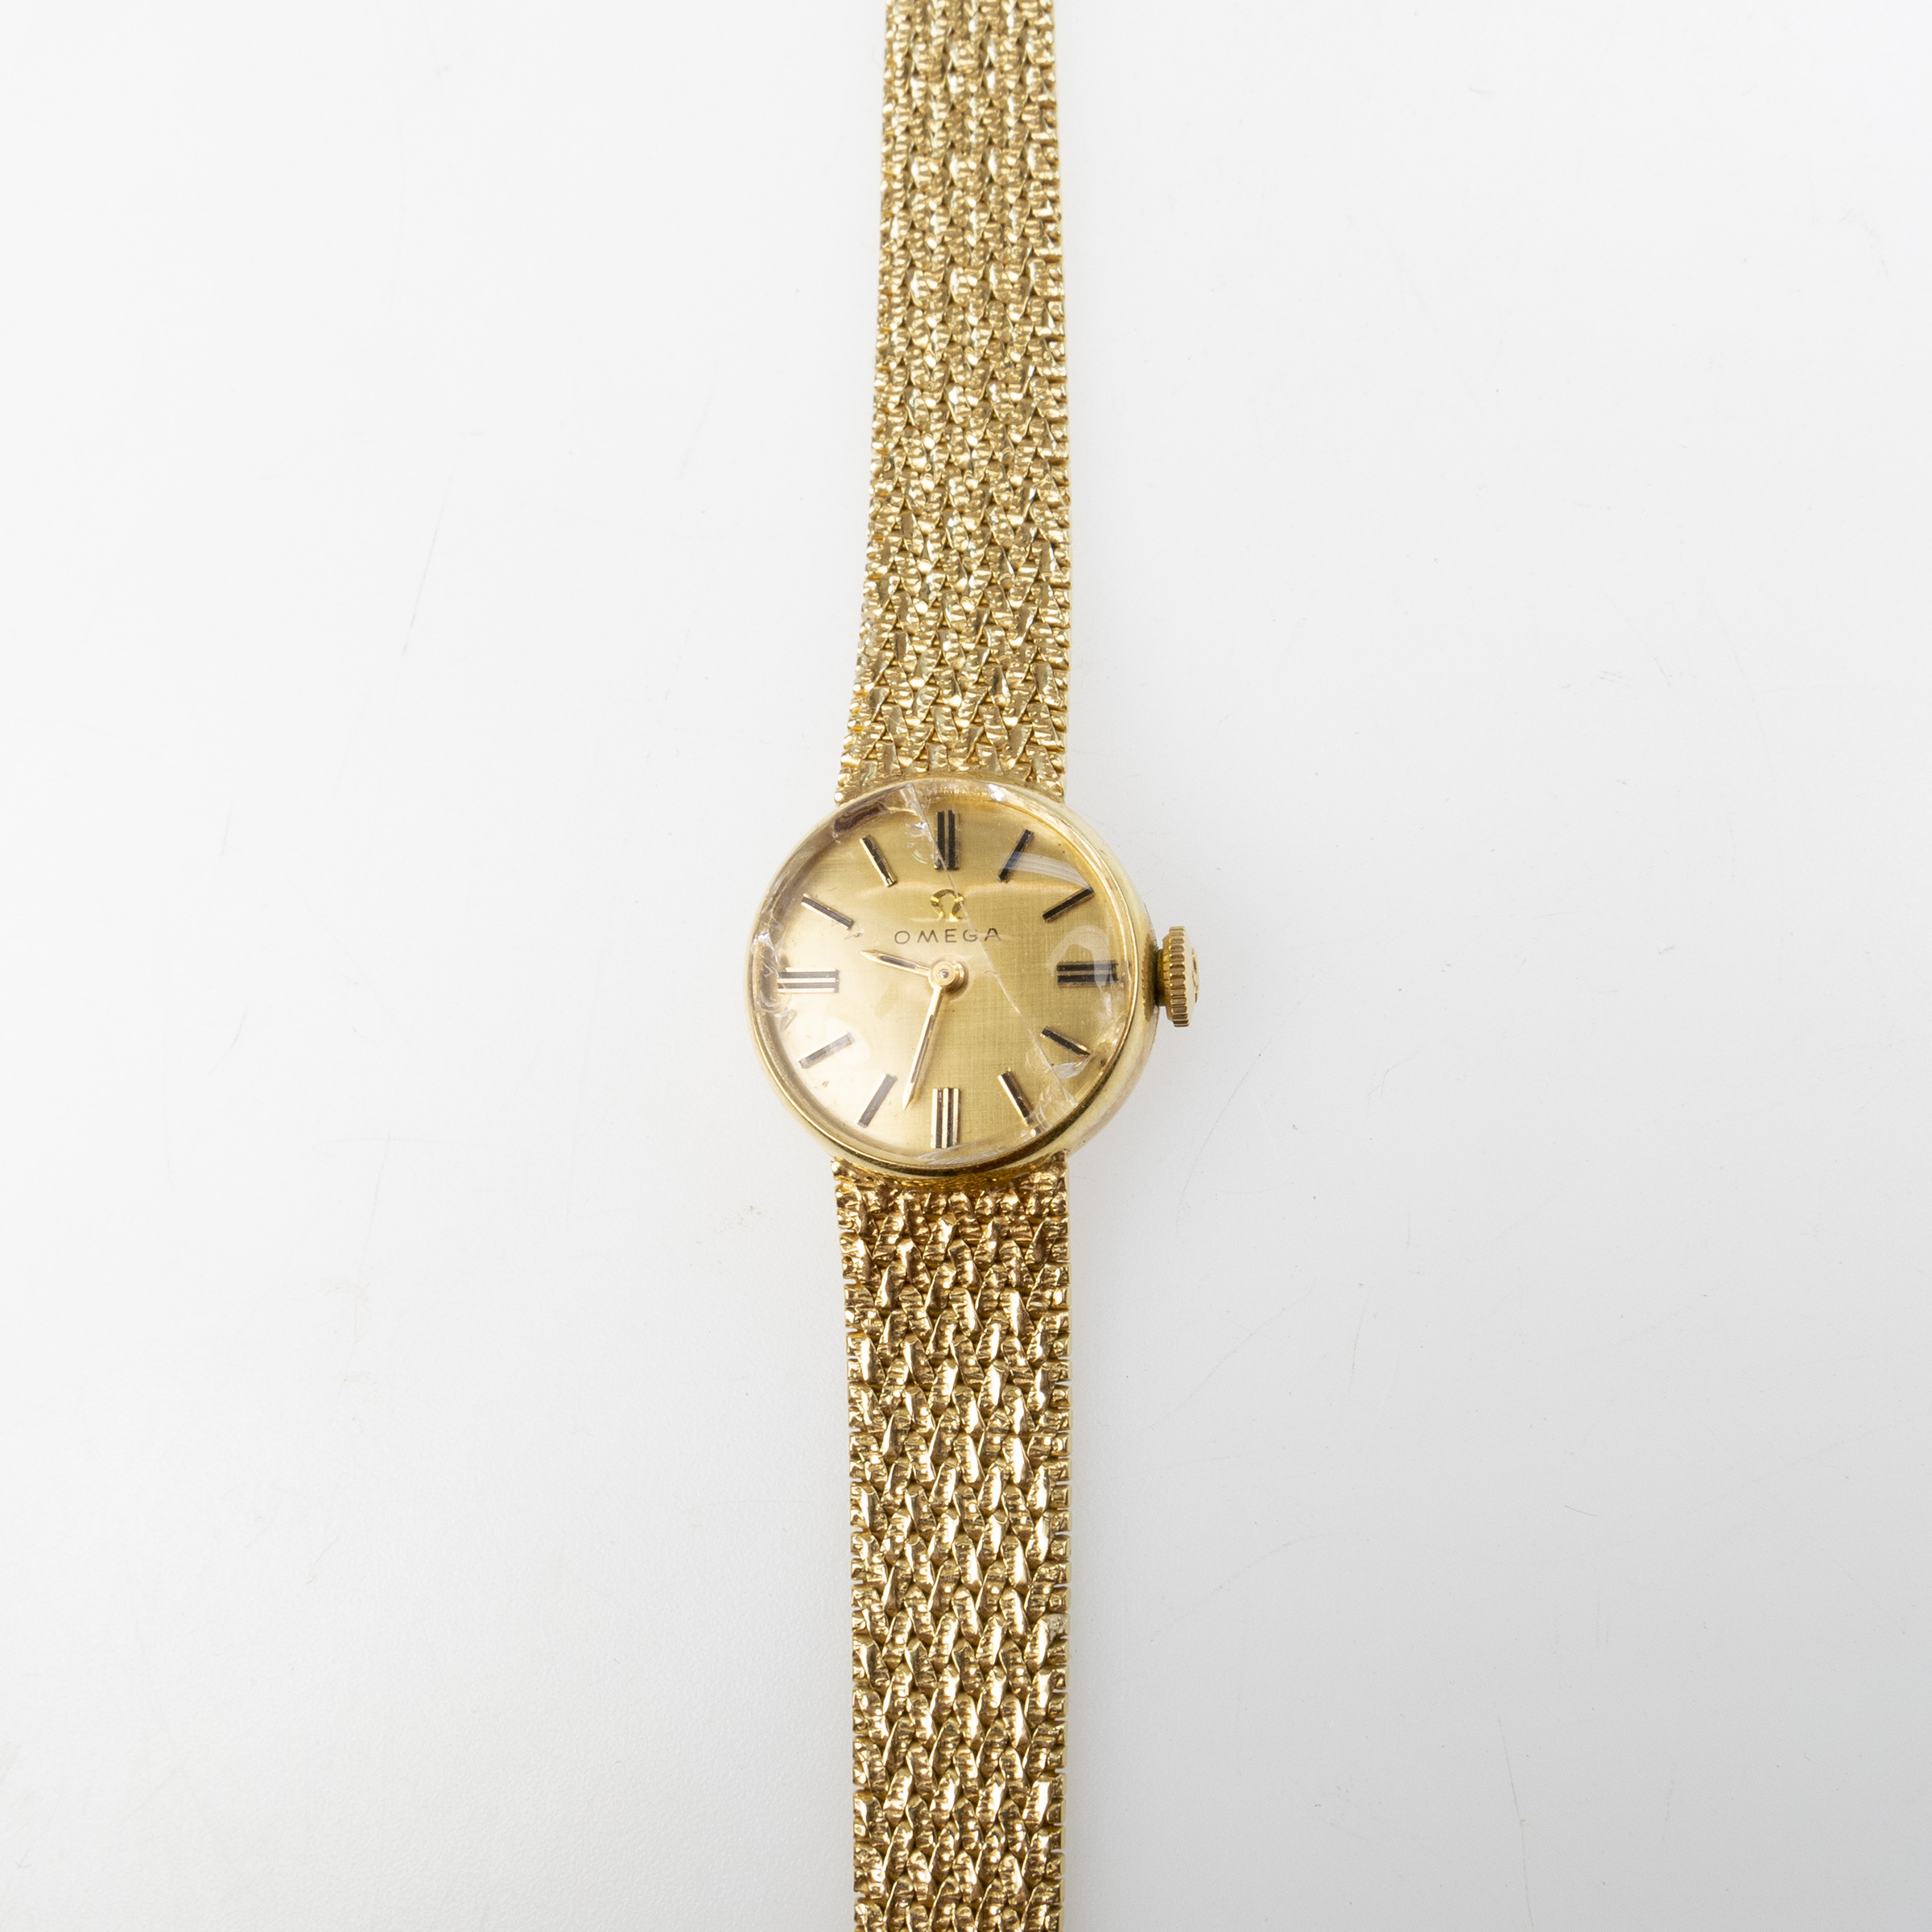 Lady's Omega Wristwatch; 